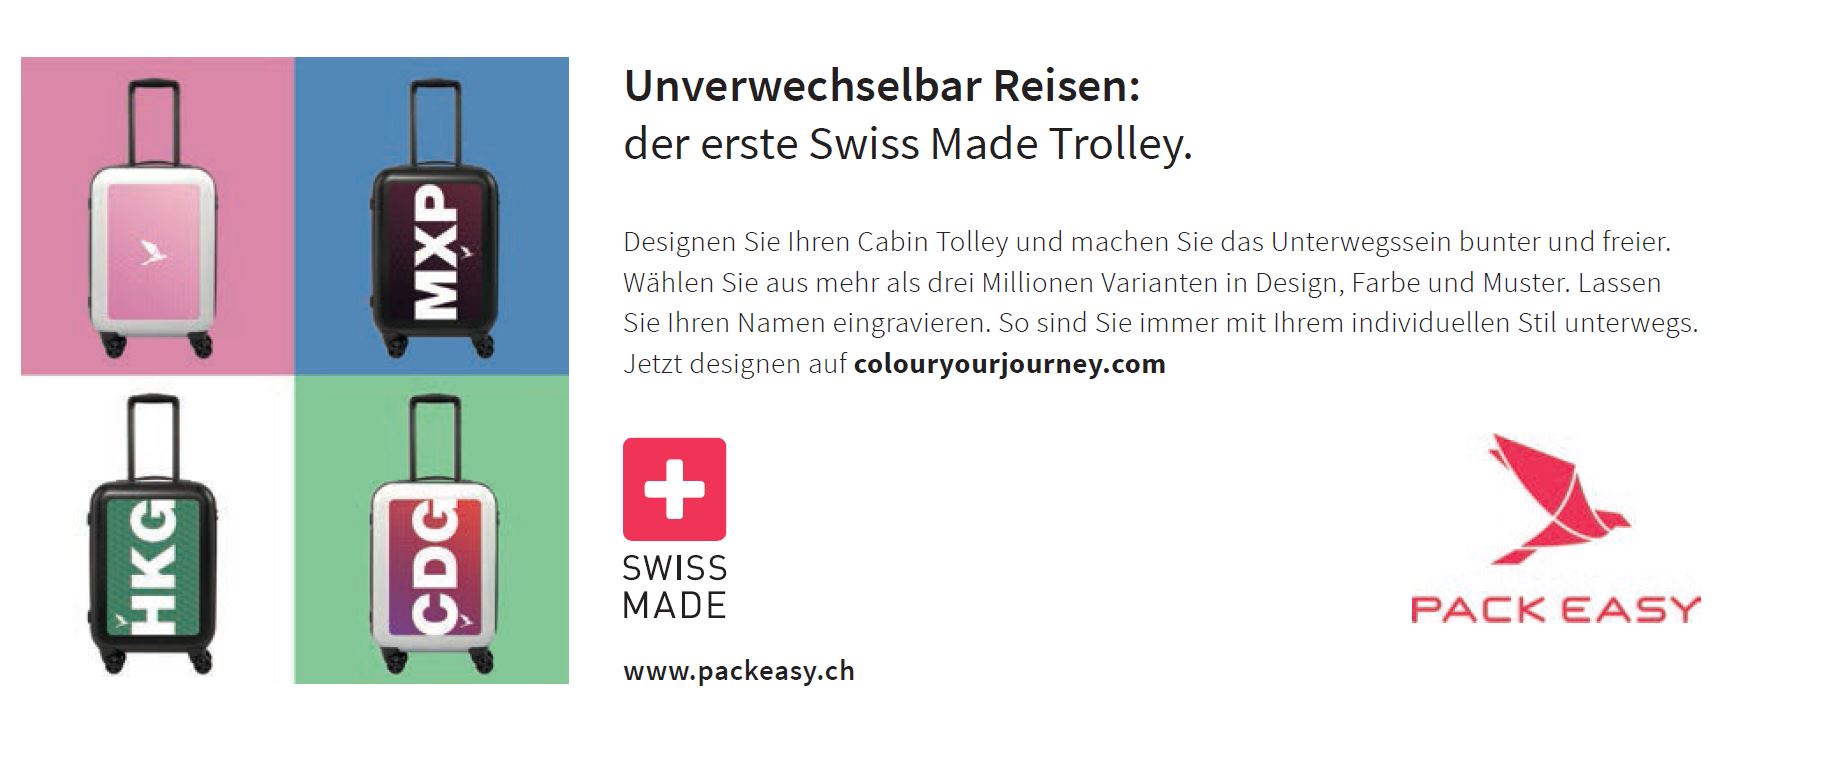 Der erste Swiss Made Trolley